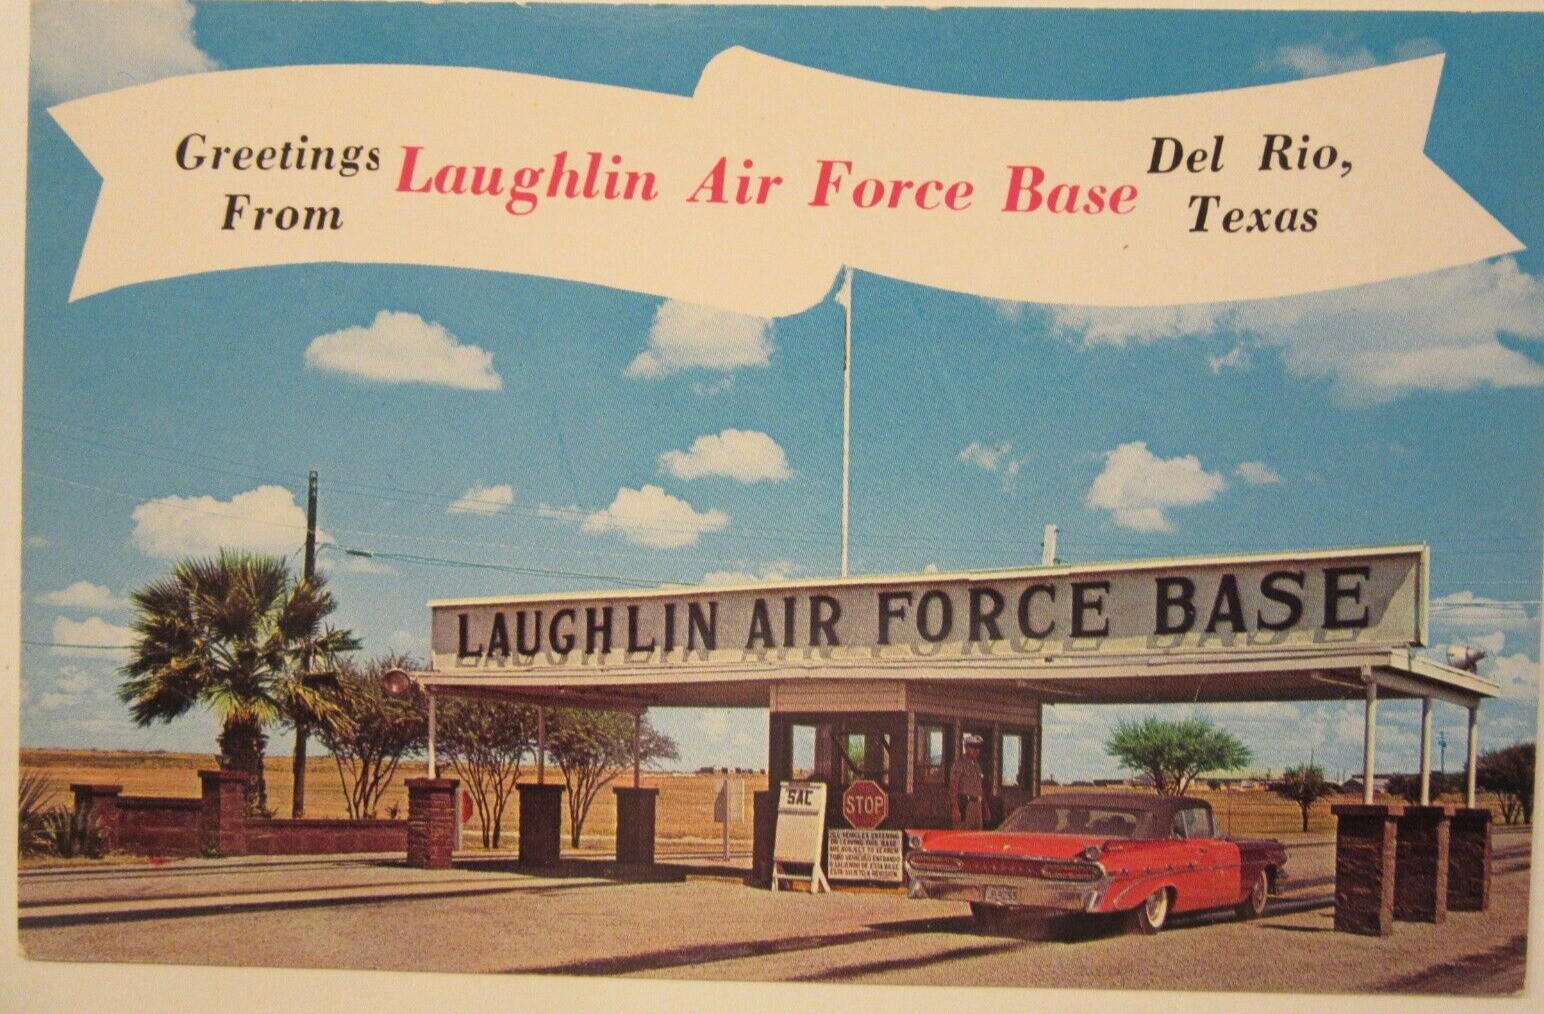 1959 PONTIAC CONVERTIBLE @ The Main Gate, LAUGHLIN AIR FORCE BASE, Del Rio, TX.